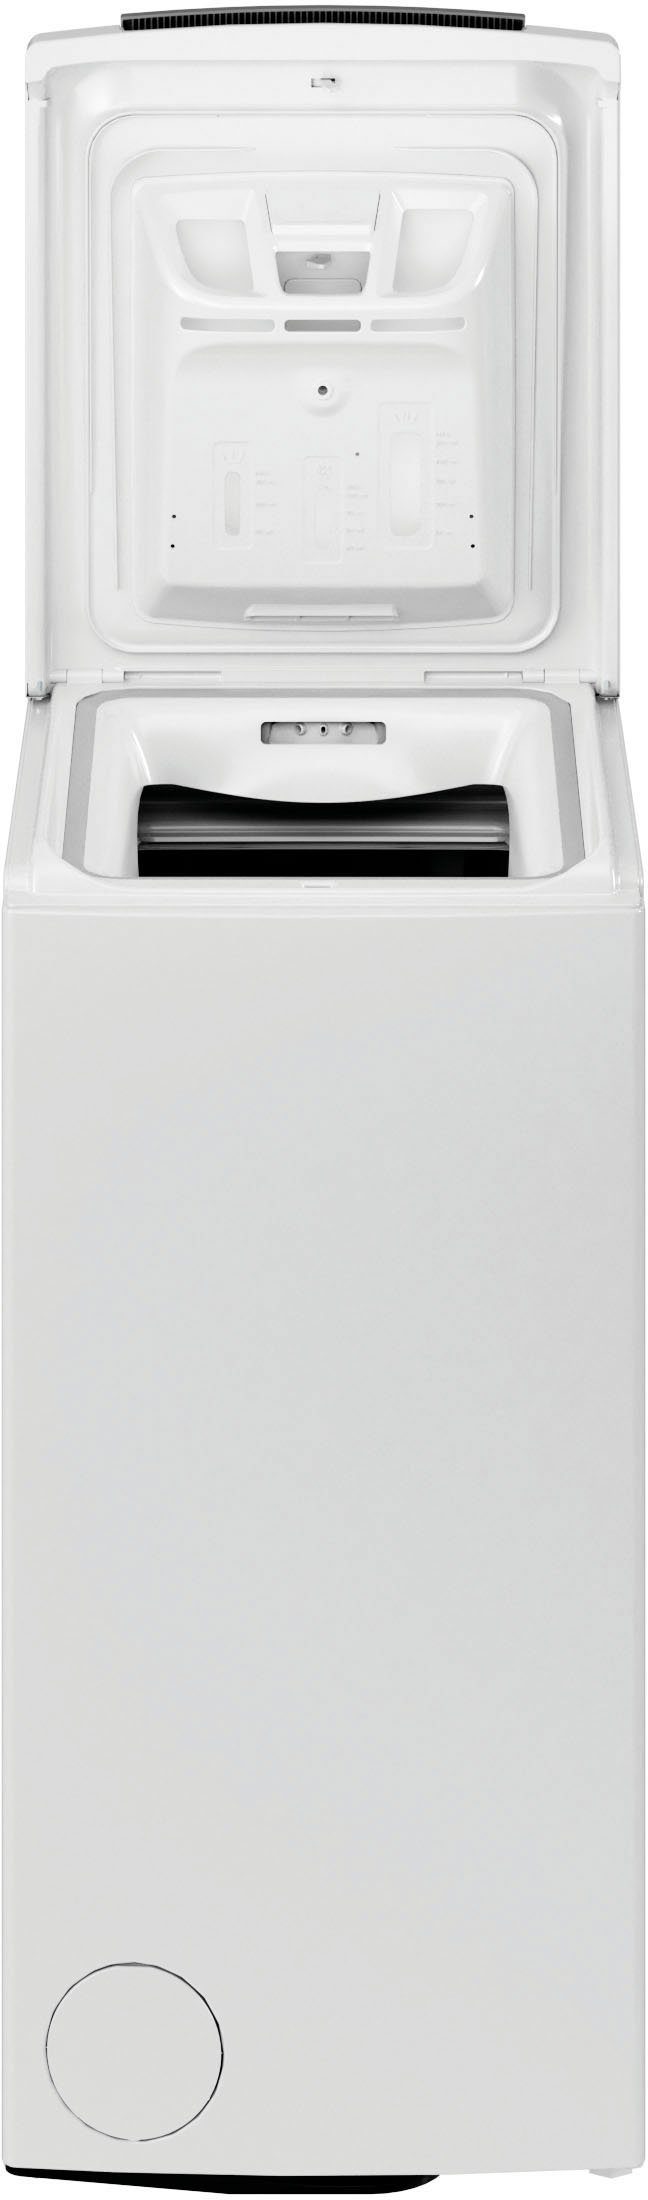 BAUKNECHT Waschmaschine Toplader WMT Pro U/min 1200 6 kg, 6ZB, Eco